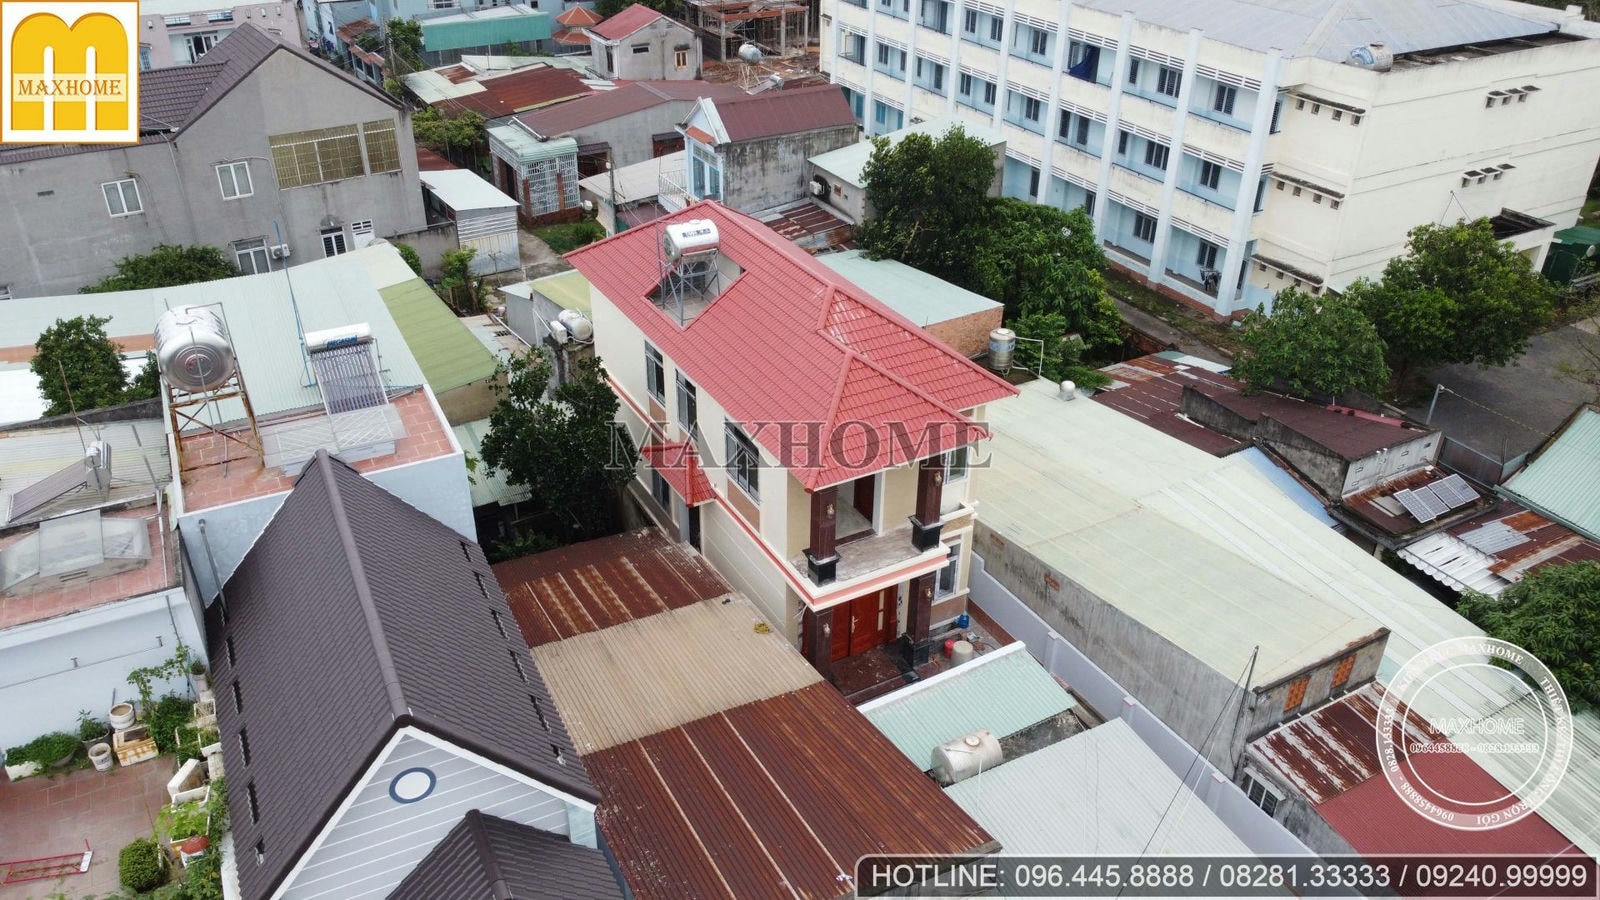 Thực tế mẫu nhà 2 tầng mái Nhật độc đáo ở Đồng Nai đến từ Maxhome